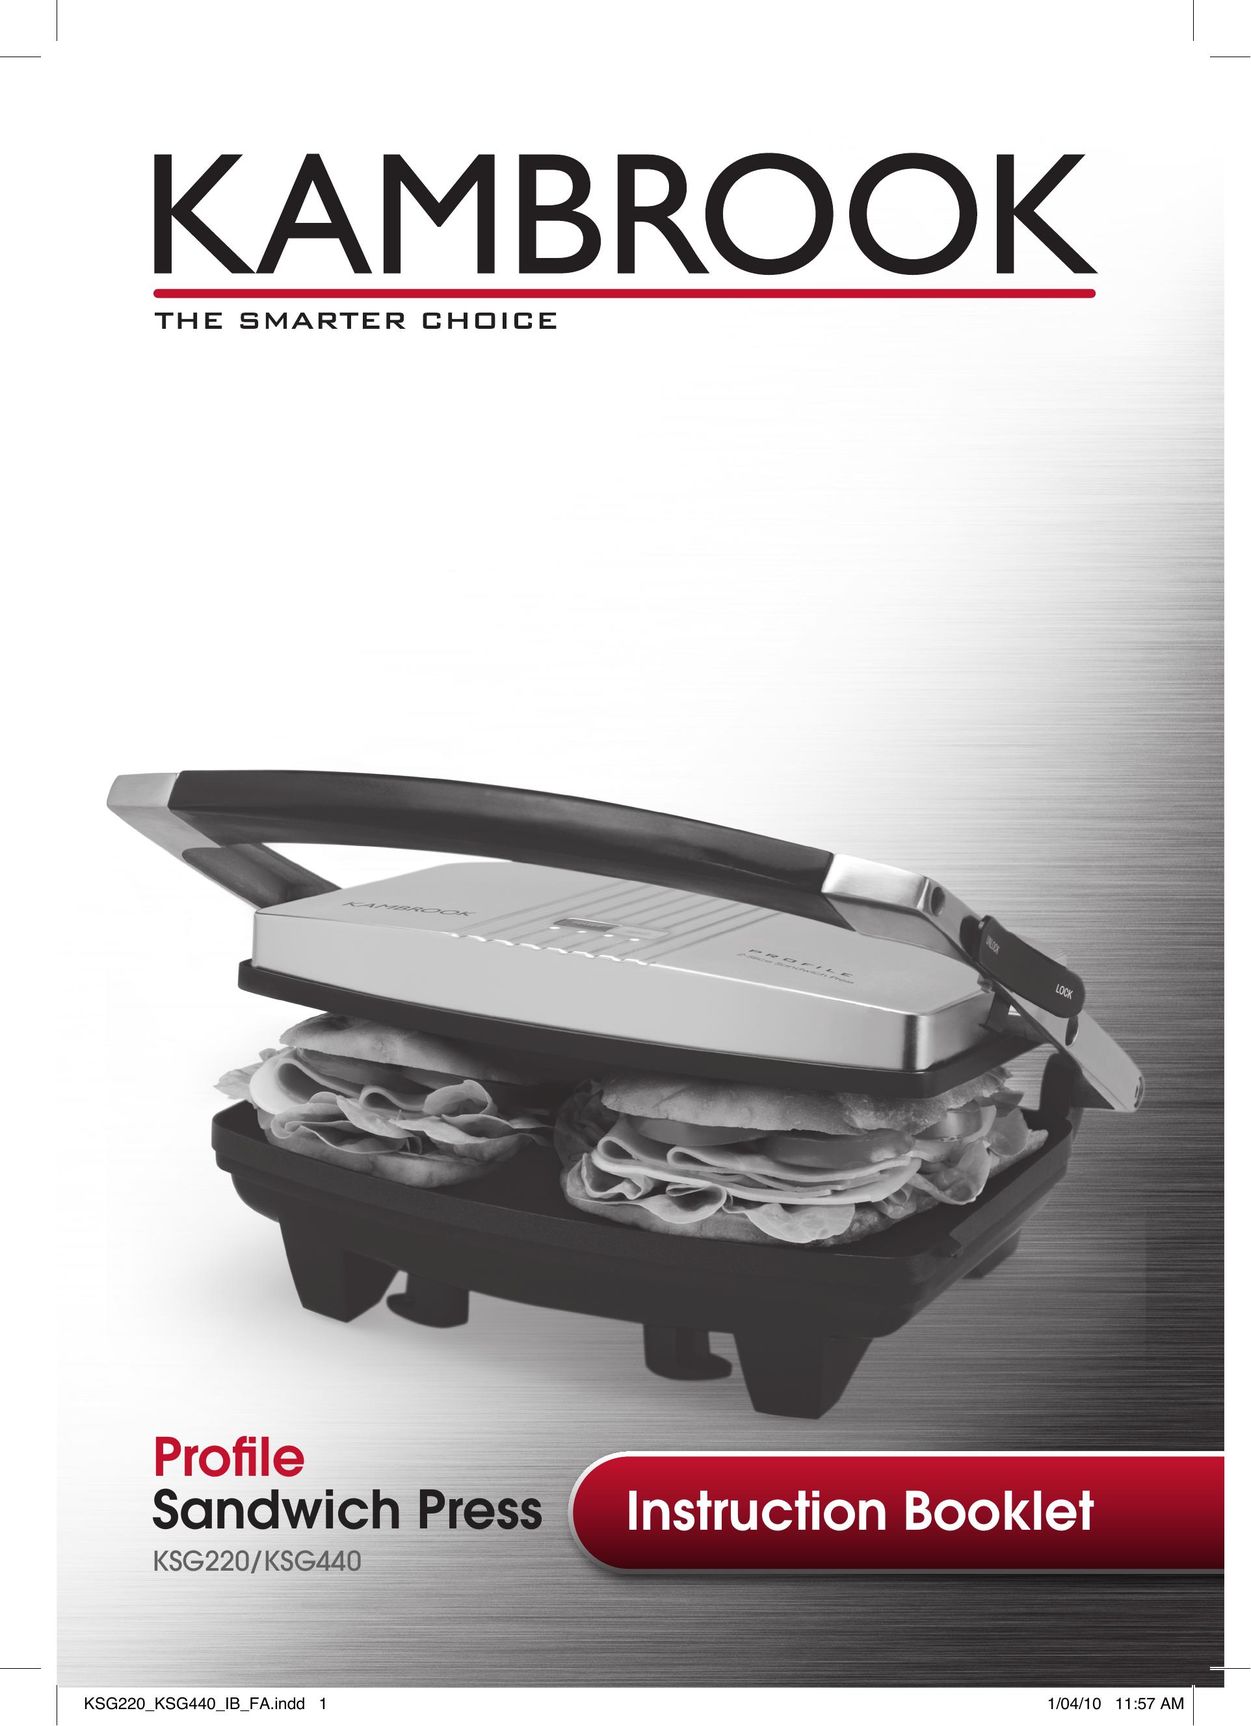 Kambrook KSG440 Kitchen Grill User Manual